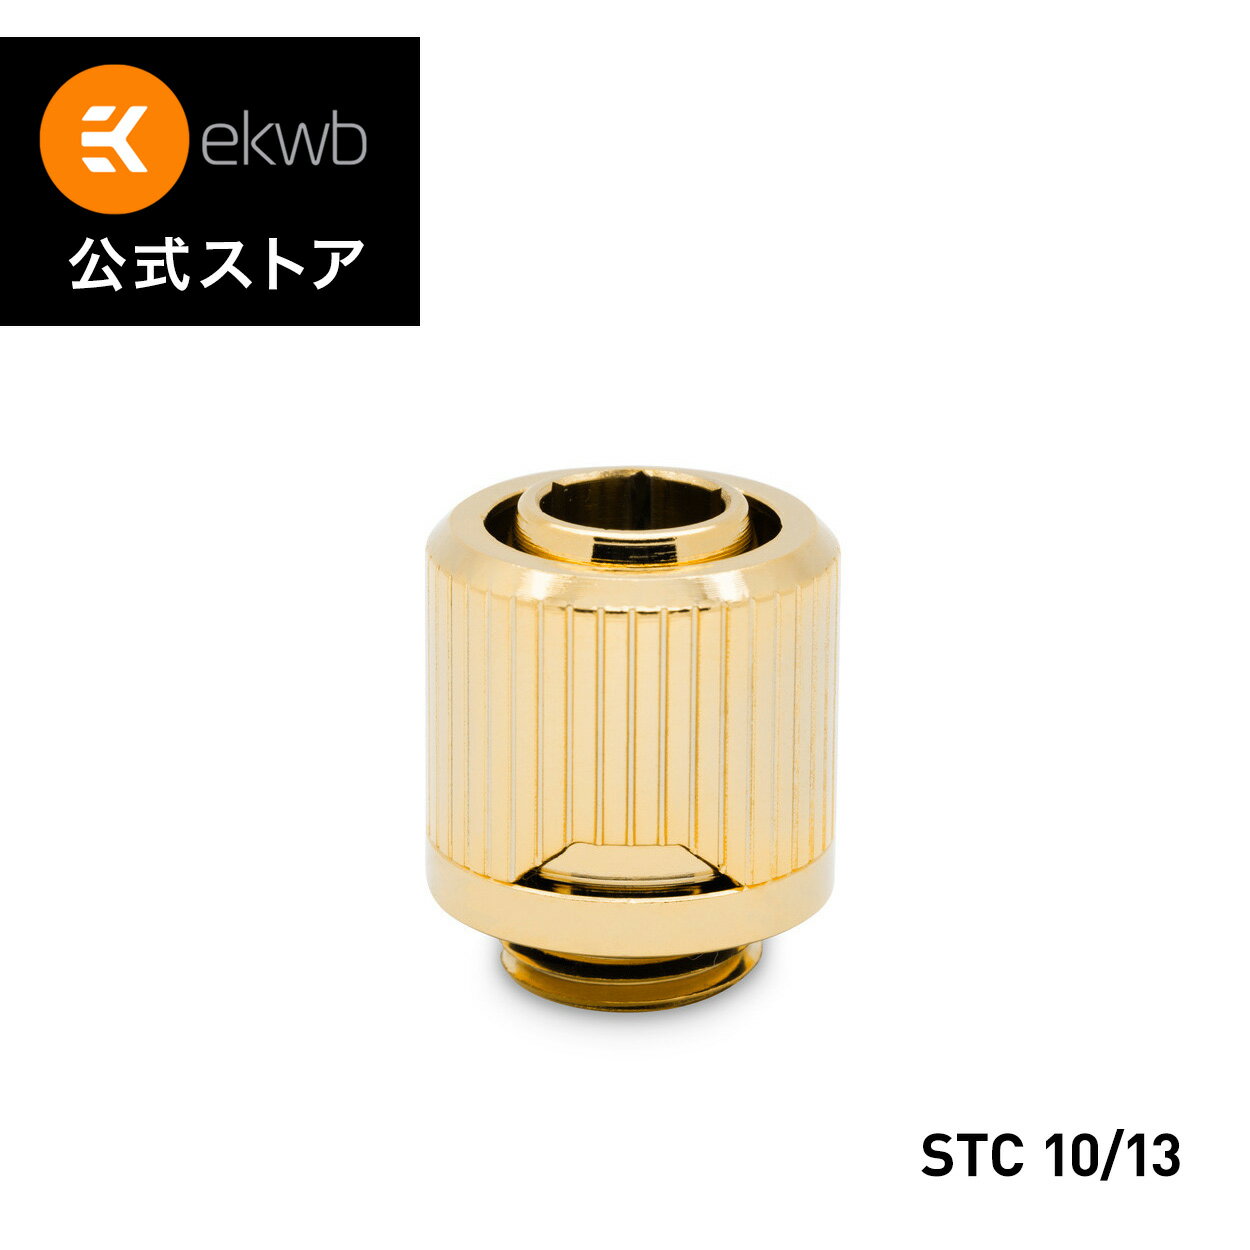  EK-Quantum Torque STC 10 13 - Gold